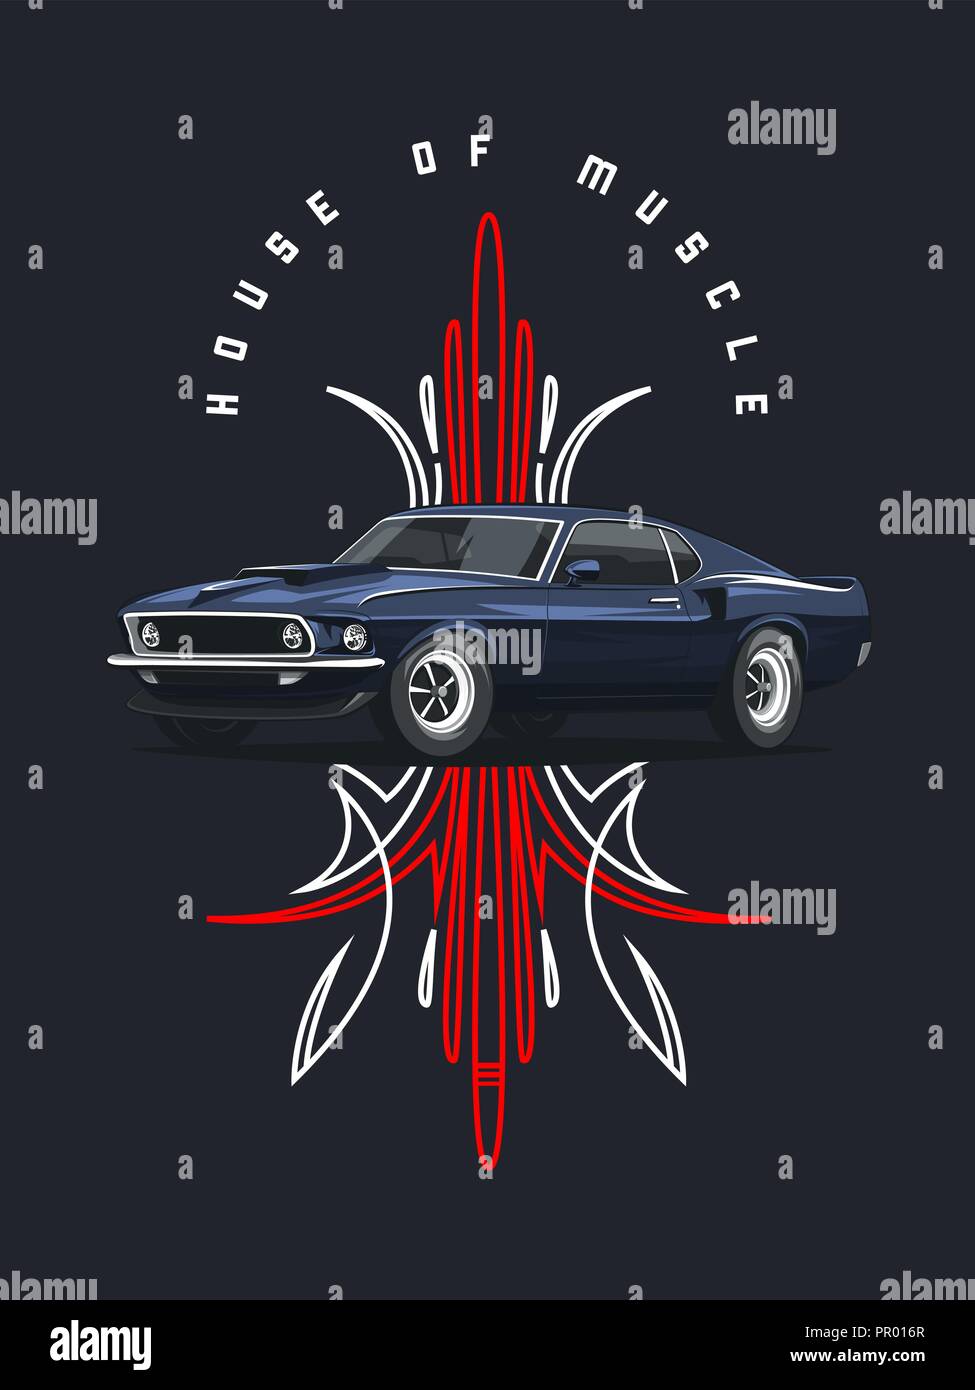 Classic muscle car poster avec ornement tribal sur fond sombre. Illustration de Vecteur